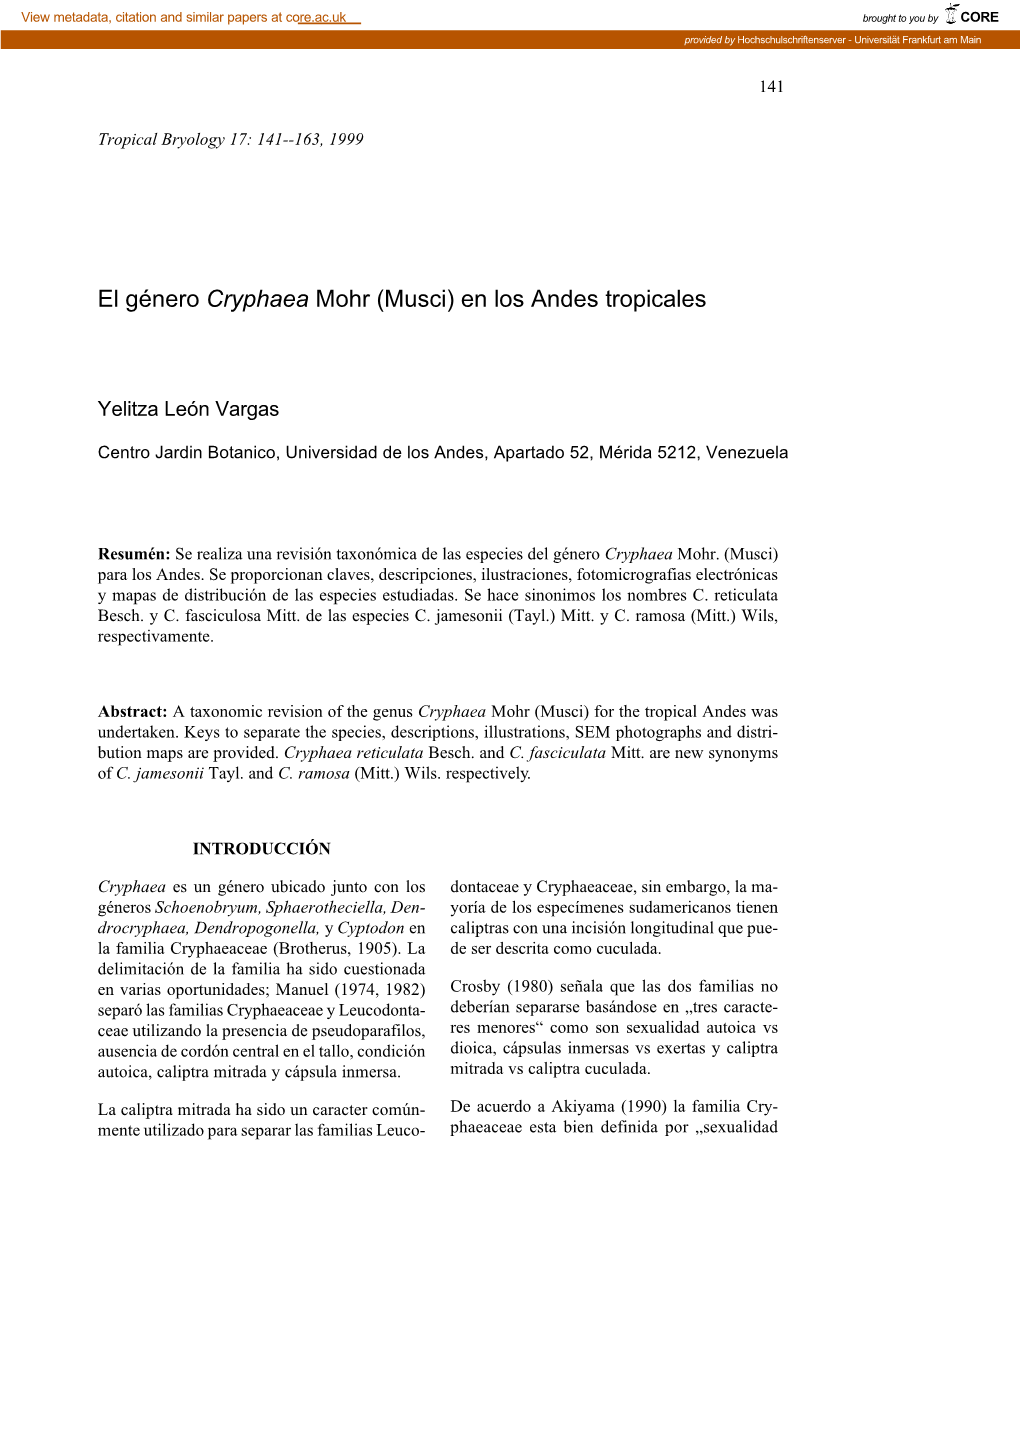 El Género Cryphaea Mohr (Musci) En Los Andes Tropicales